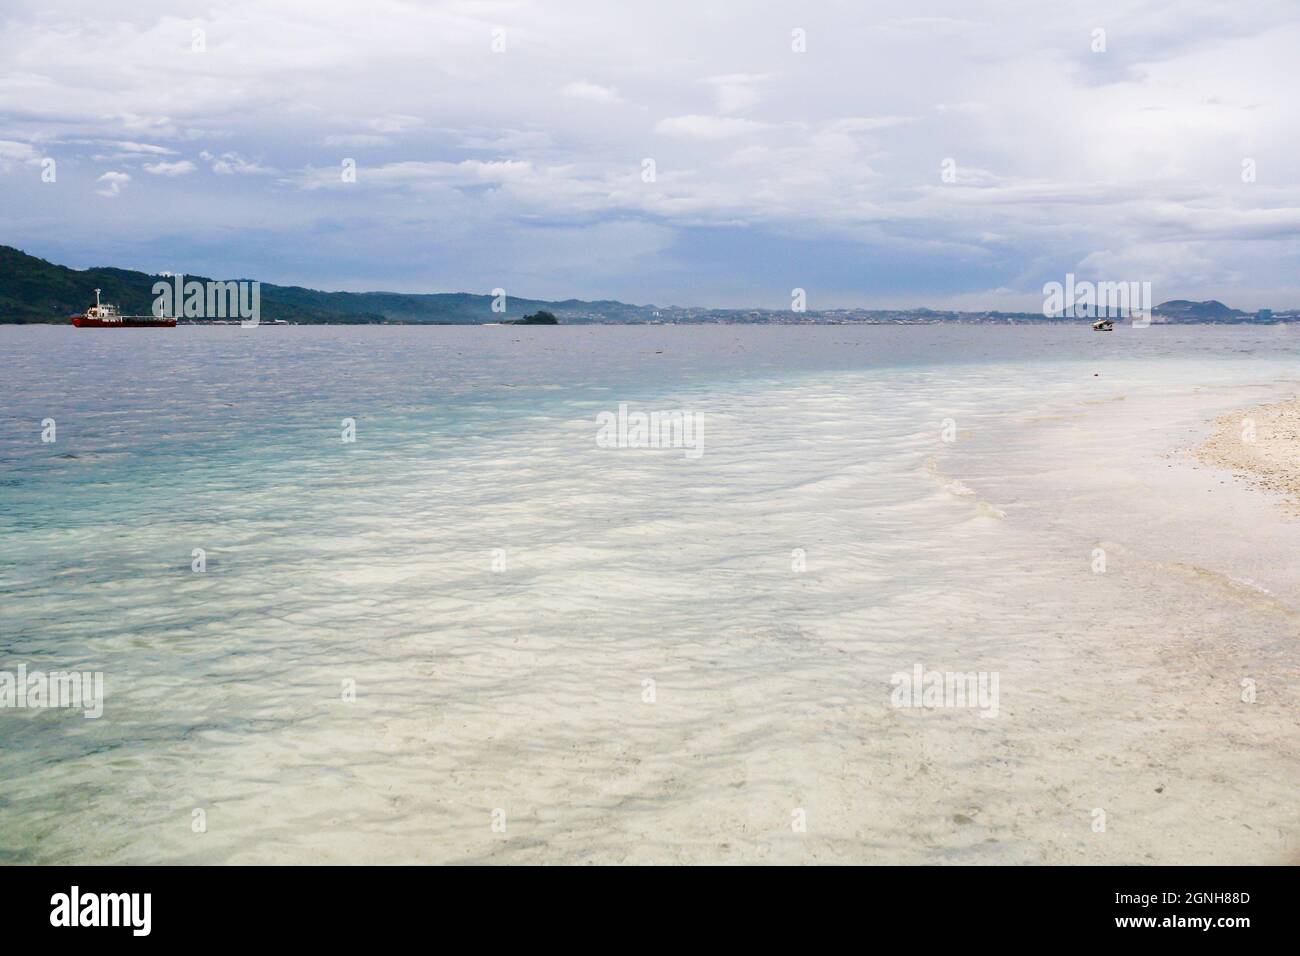 Vista panoramica della spiaggia tropicale con spettacolari nuvole nel cielo blu e montagna sullo sfondo. Acqua limpida turchese. Nessuna gente. Foto Stock